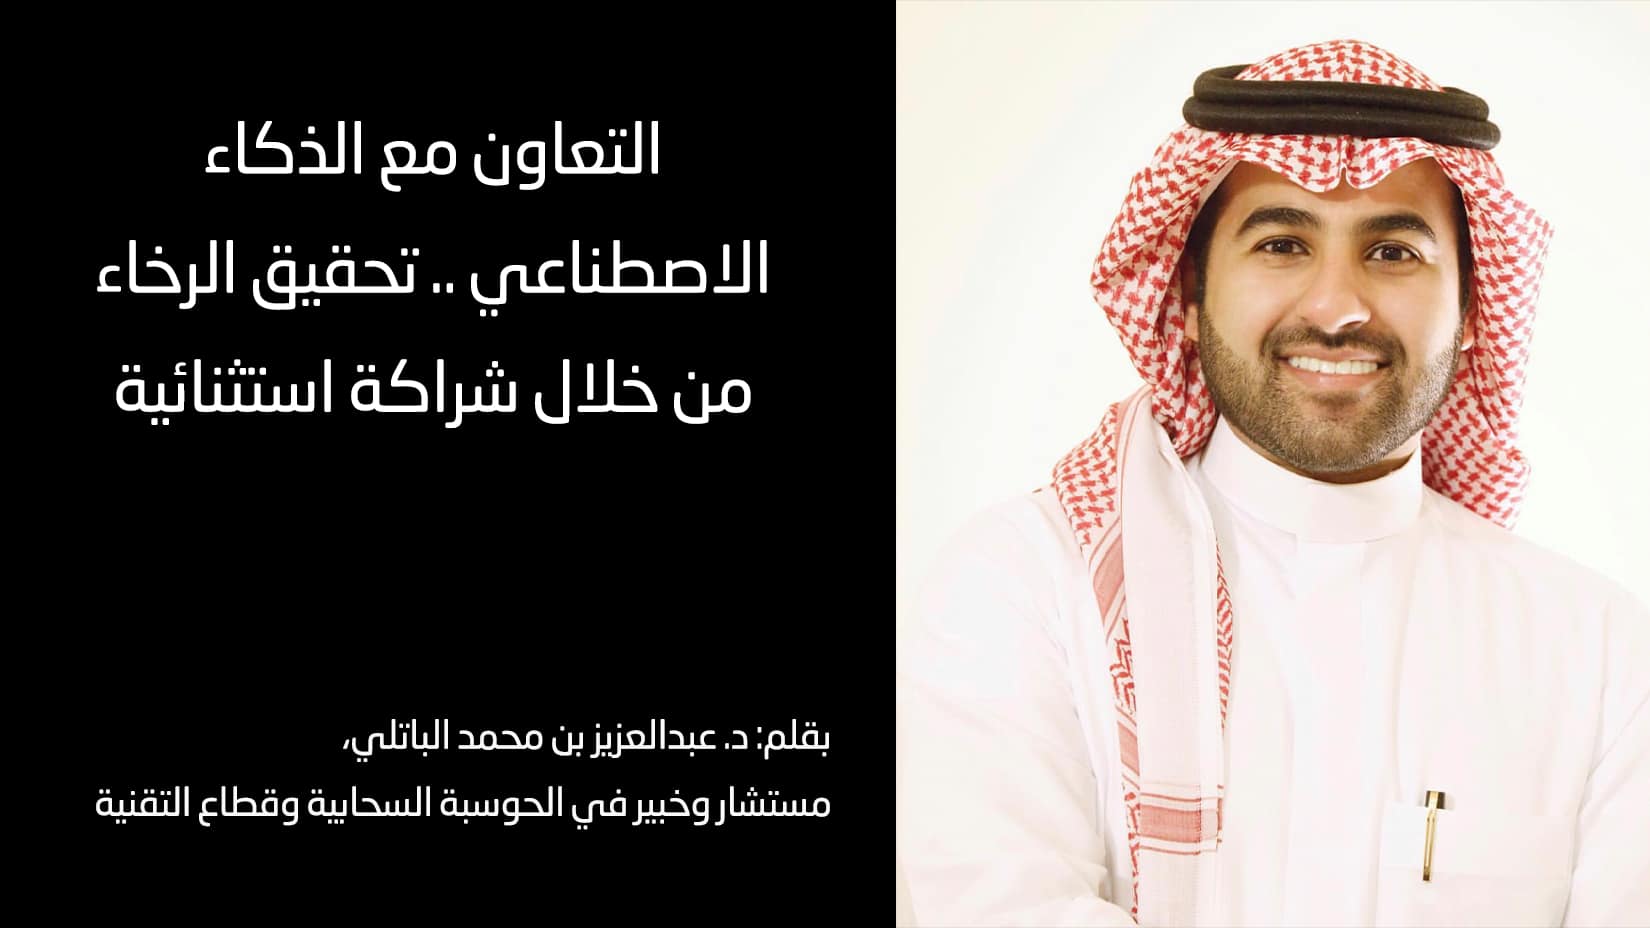 د. عبدالعزيز بن محمد الباتلي، مستشار وخبير في الحوسبة السحابية وقطاع التقنية